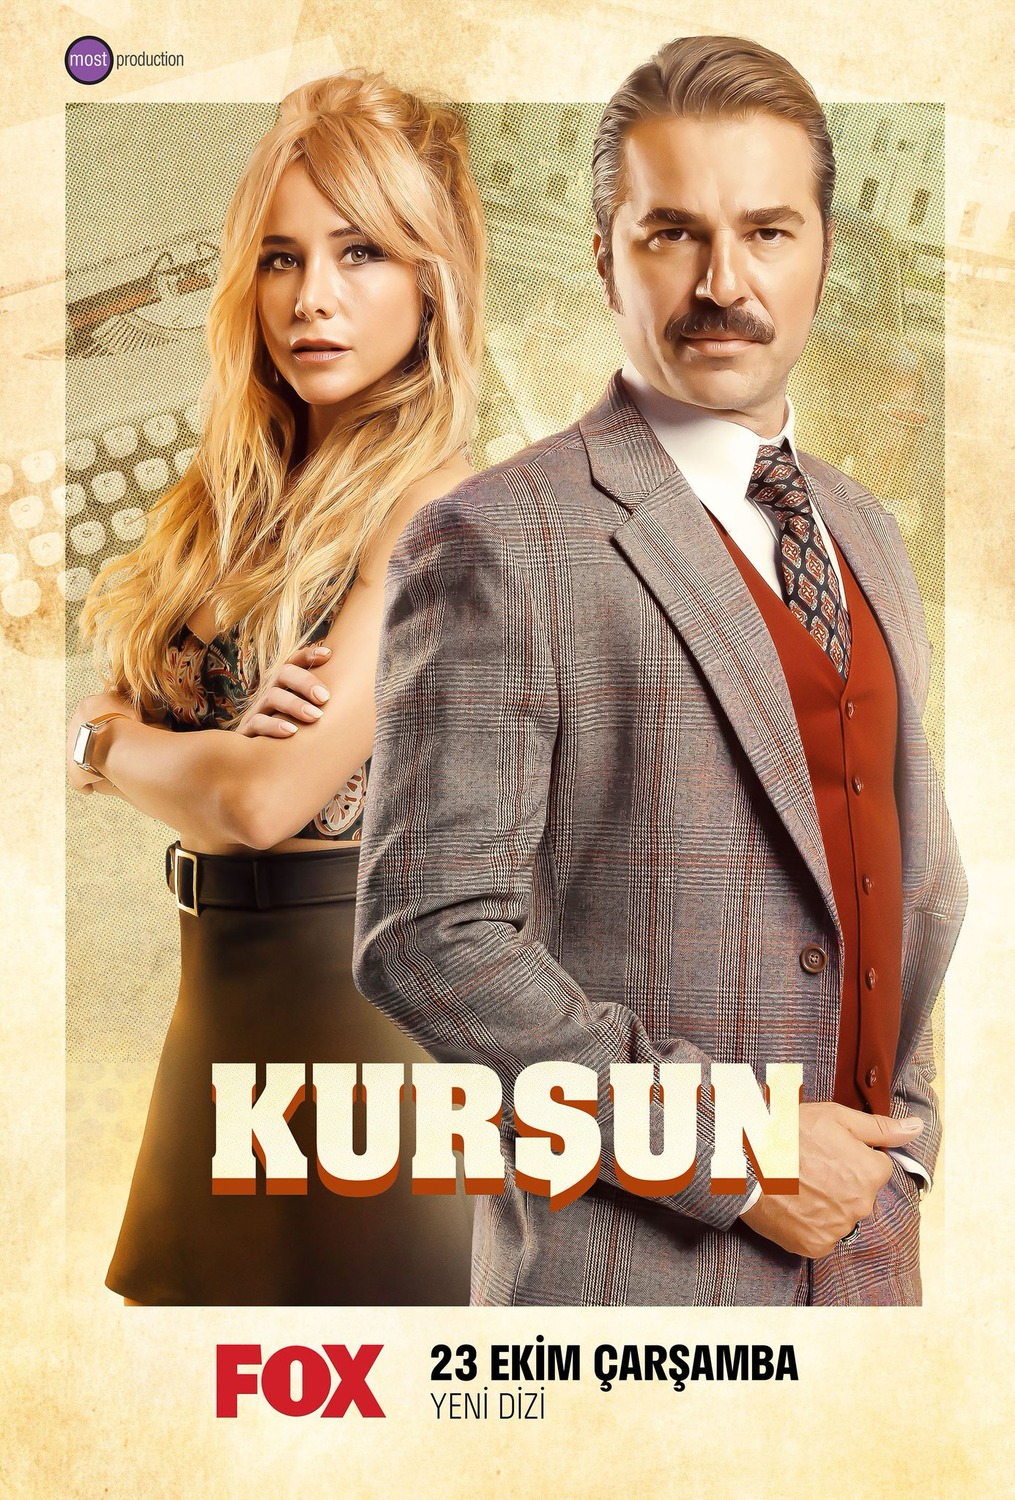 Extra Large TV Poster Image for Kursun 